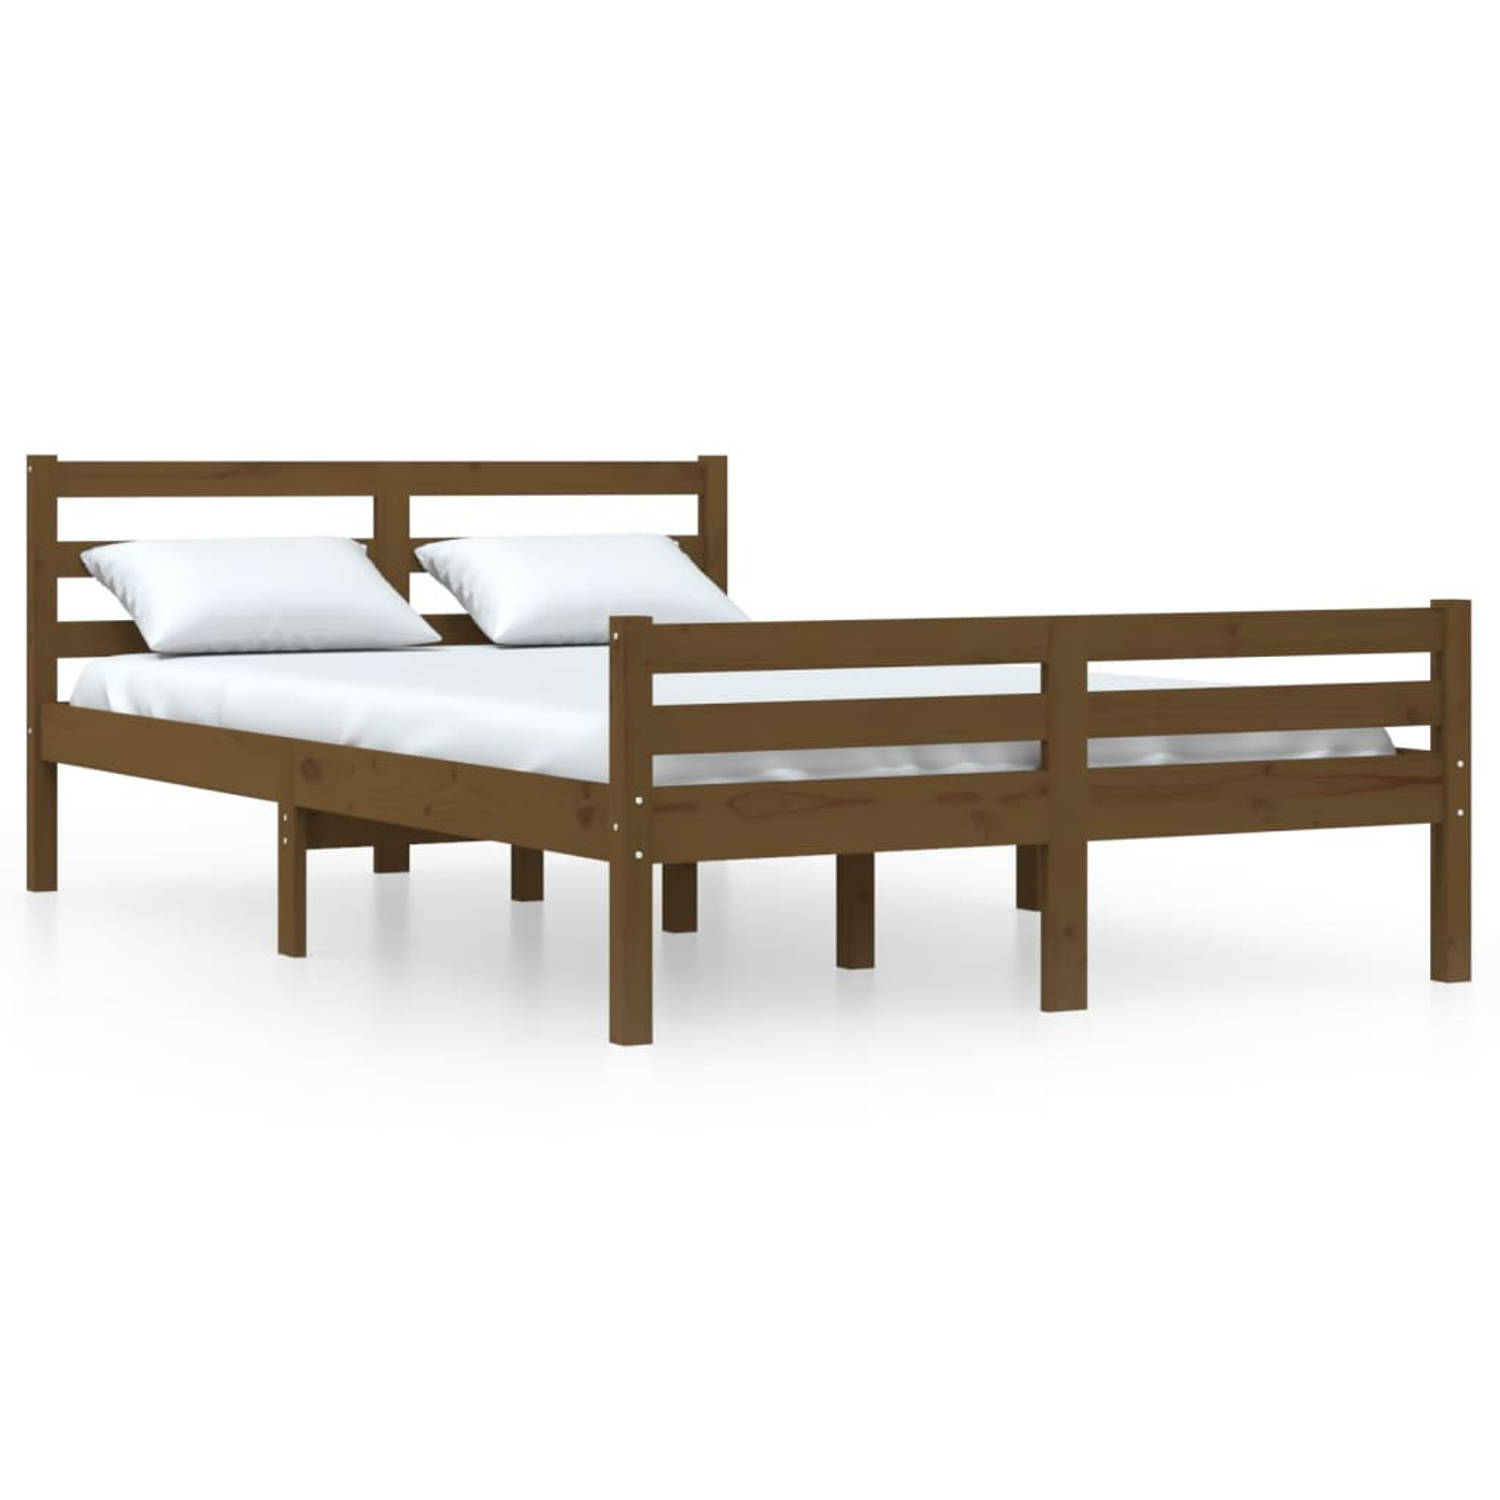 The Living Store Bedframe massief hout honingbruin 140x200 cm - Bedframe - Bedframes - Bed - Bedbodem - Ledikant - Bed Frame - Massief Houten Bedframe - Slaapmeubel - Tweepersoonsb